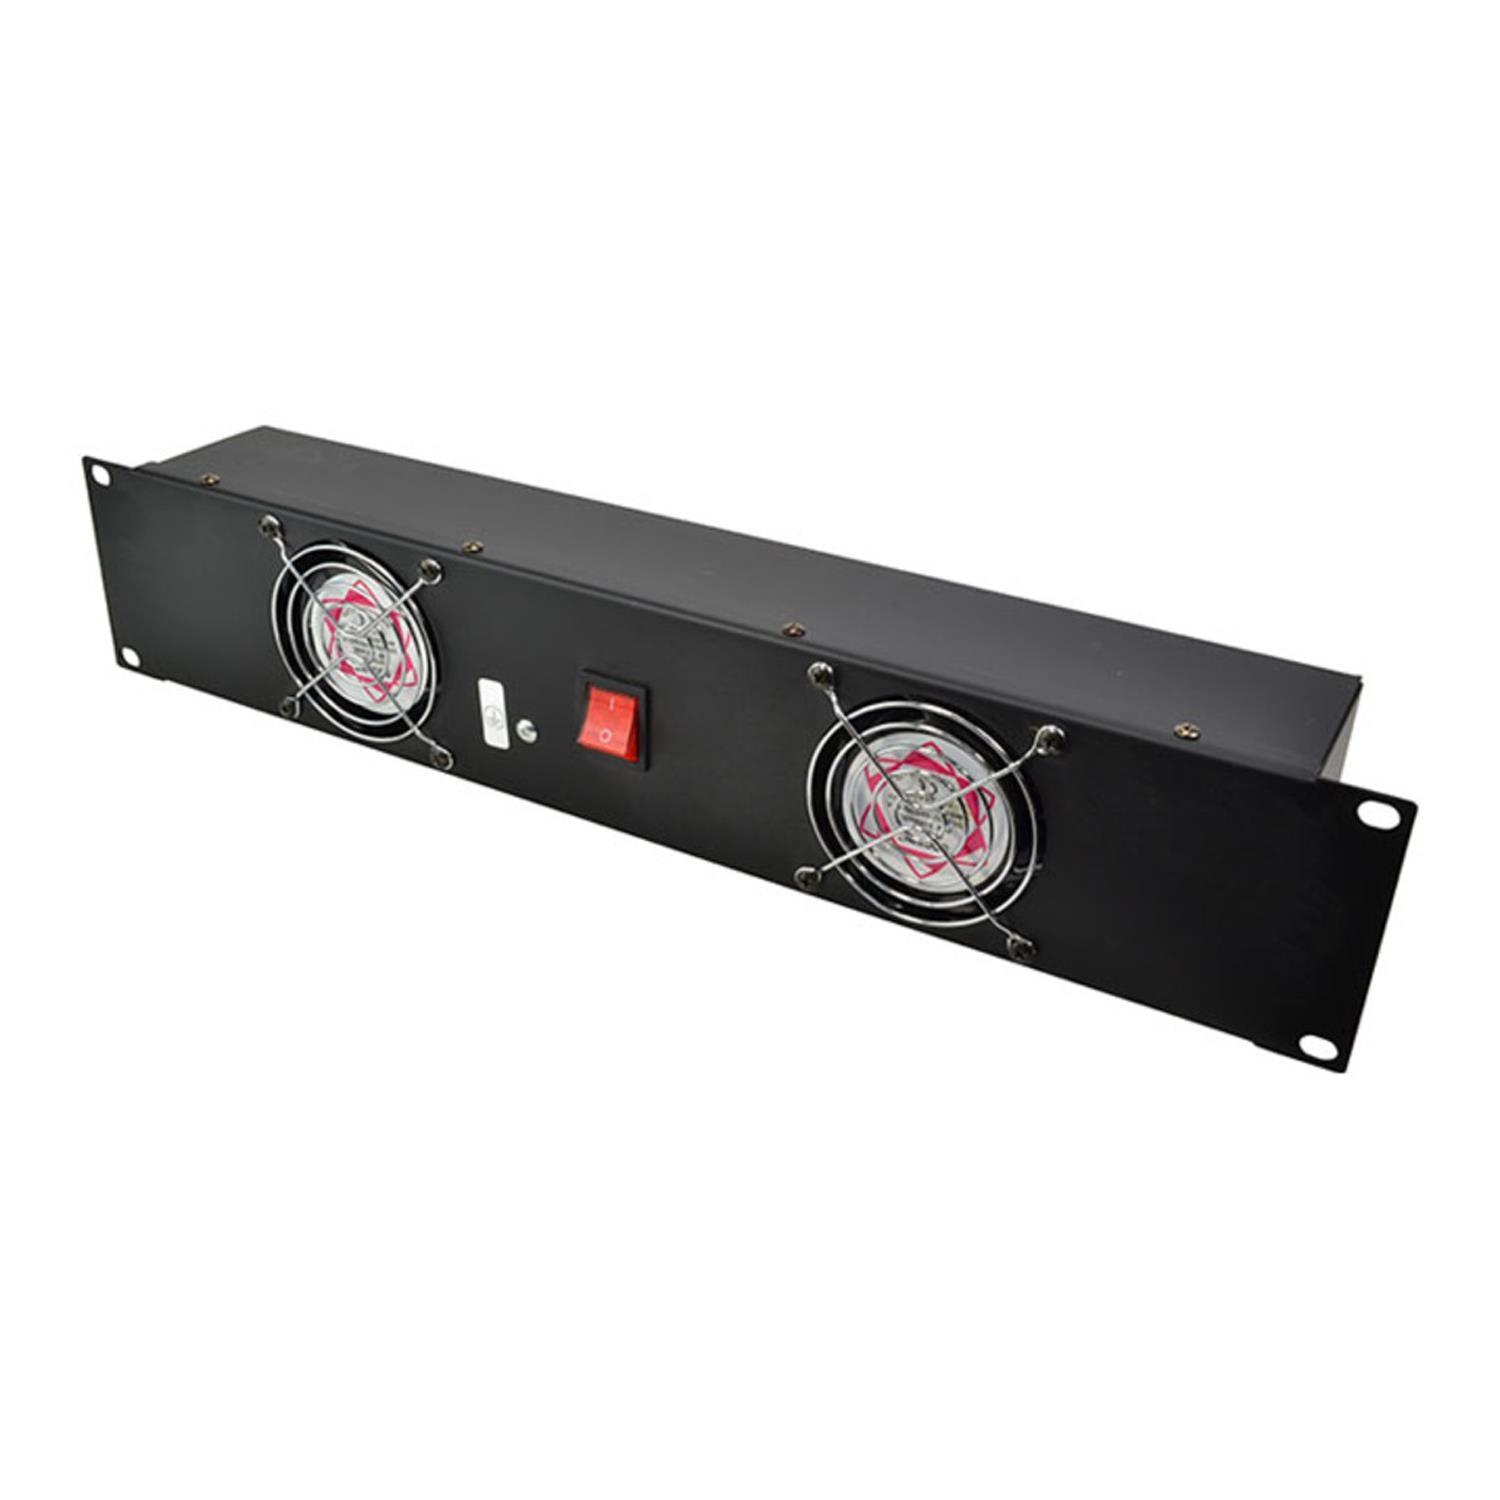 Stagecore RK2FAN 19" 2U Rackmount Fan Panel with 2 x 80mm Pre-fitted Fans - DY Pro Audio